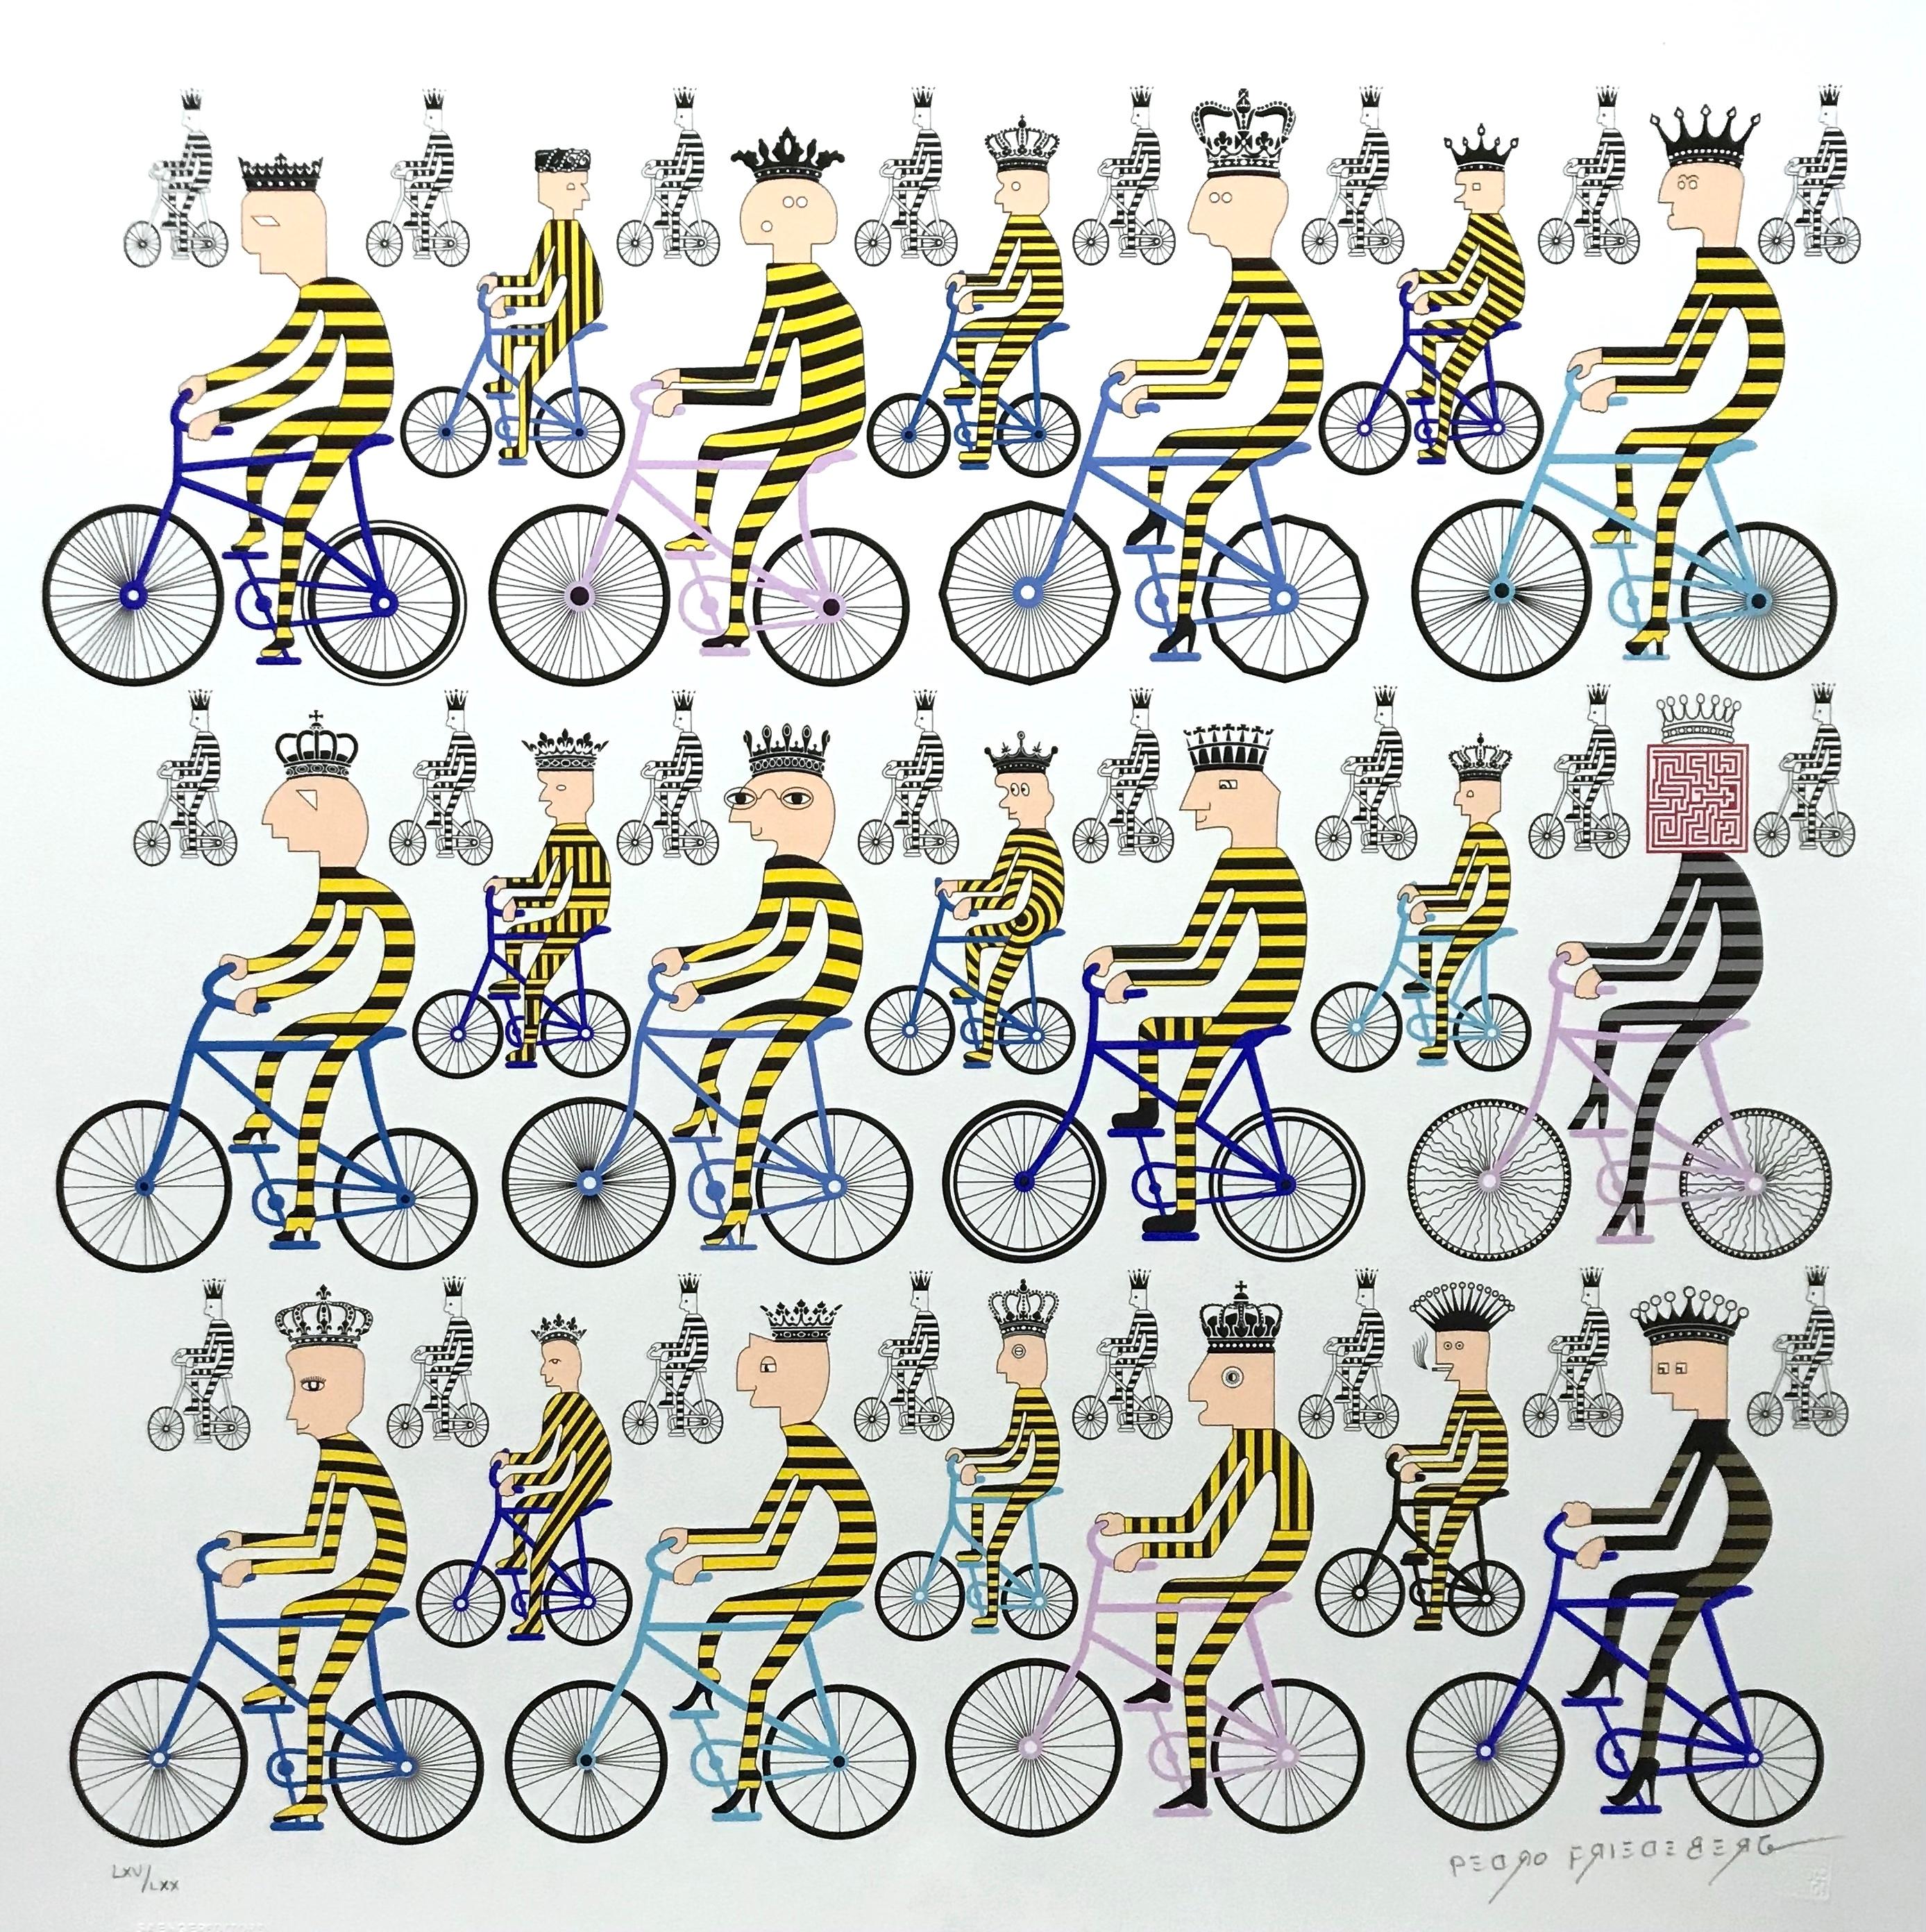 Bike race of Kings